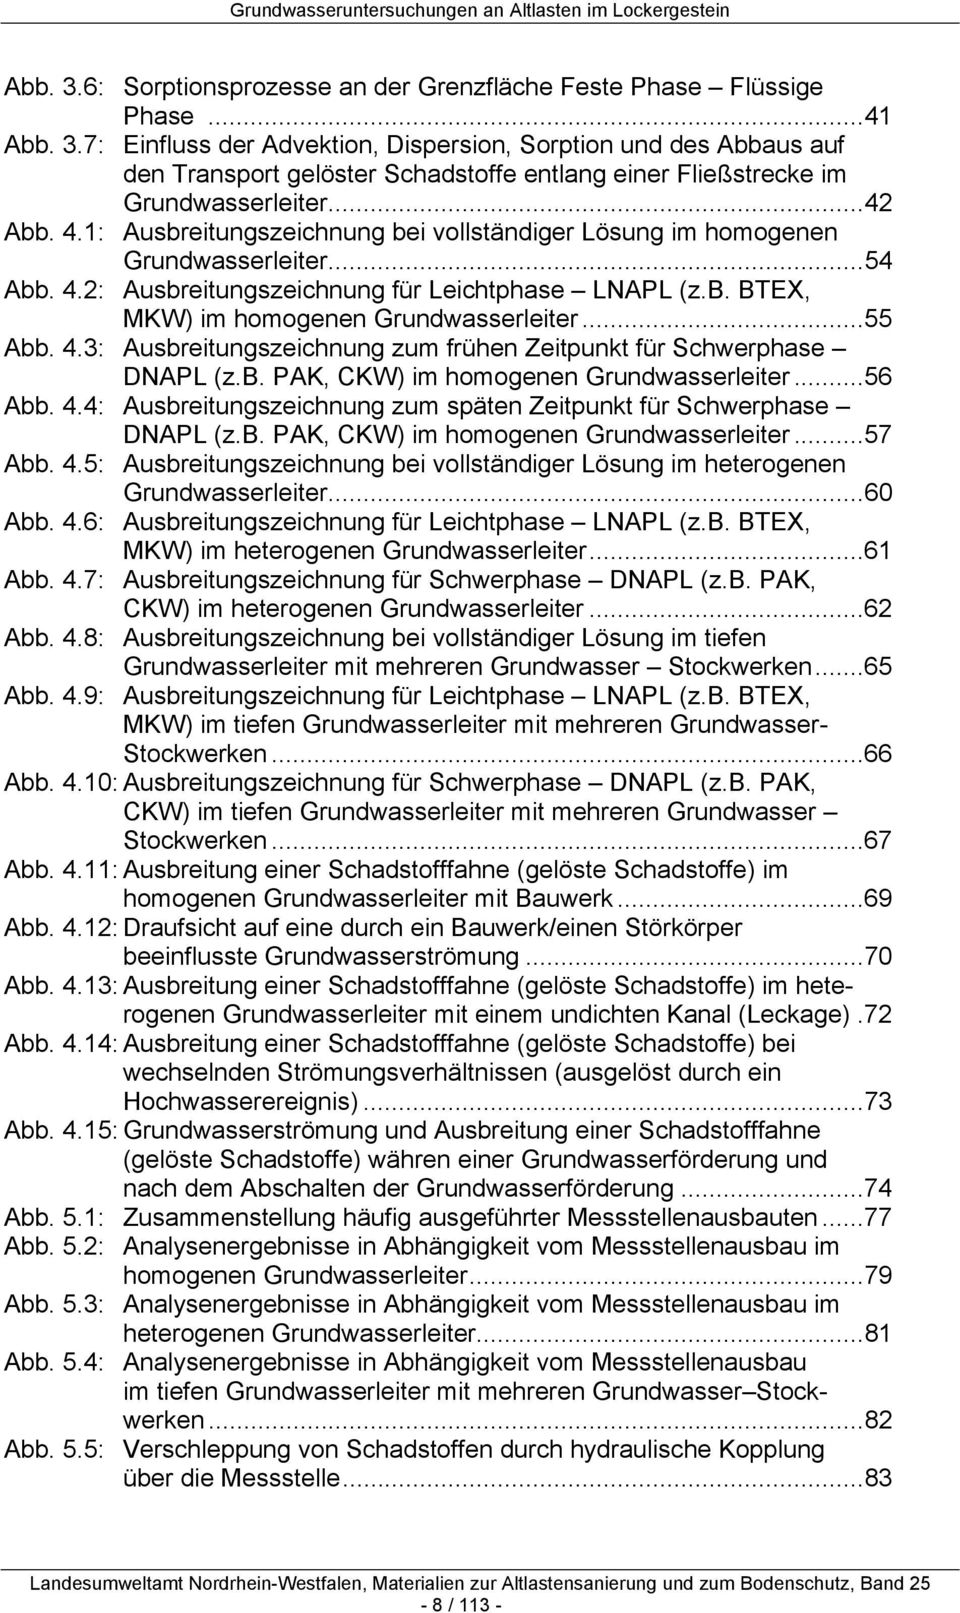 ..55 Abb. 4.3: Ausbreitungszeichnung zum frühen Zeitpunkt für Schwerphase DNAPL (z.b. PAK, CKW) im homogenen Grundwasserleiter...56 Abb. 4.4: Ausbreitungszeichnung zum späten Zeitpunkt für Schwerphase DNAPL (z.